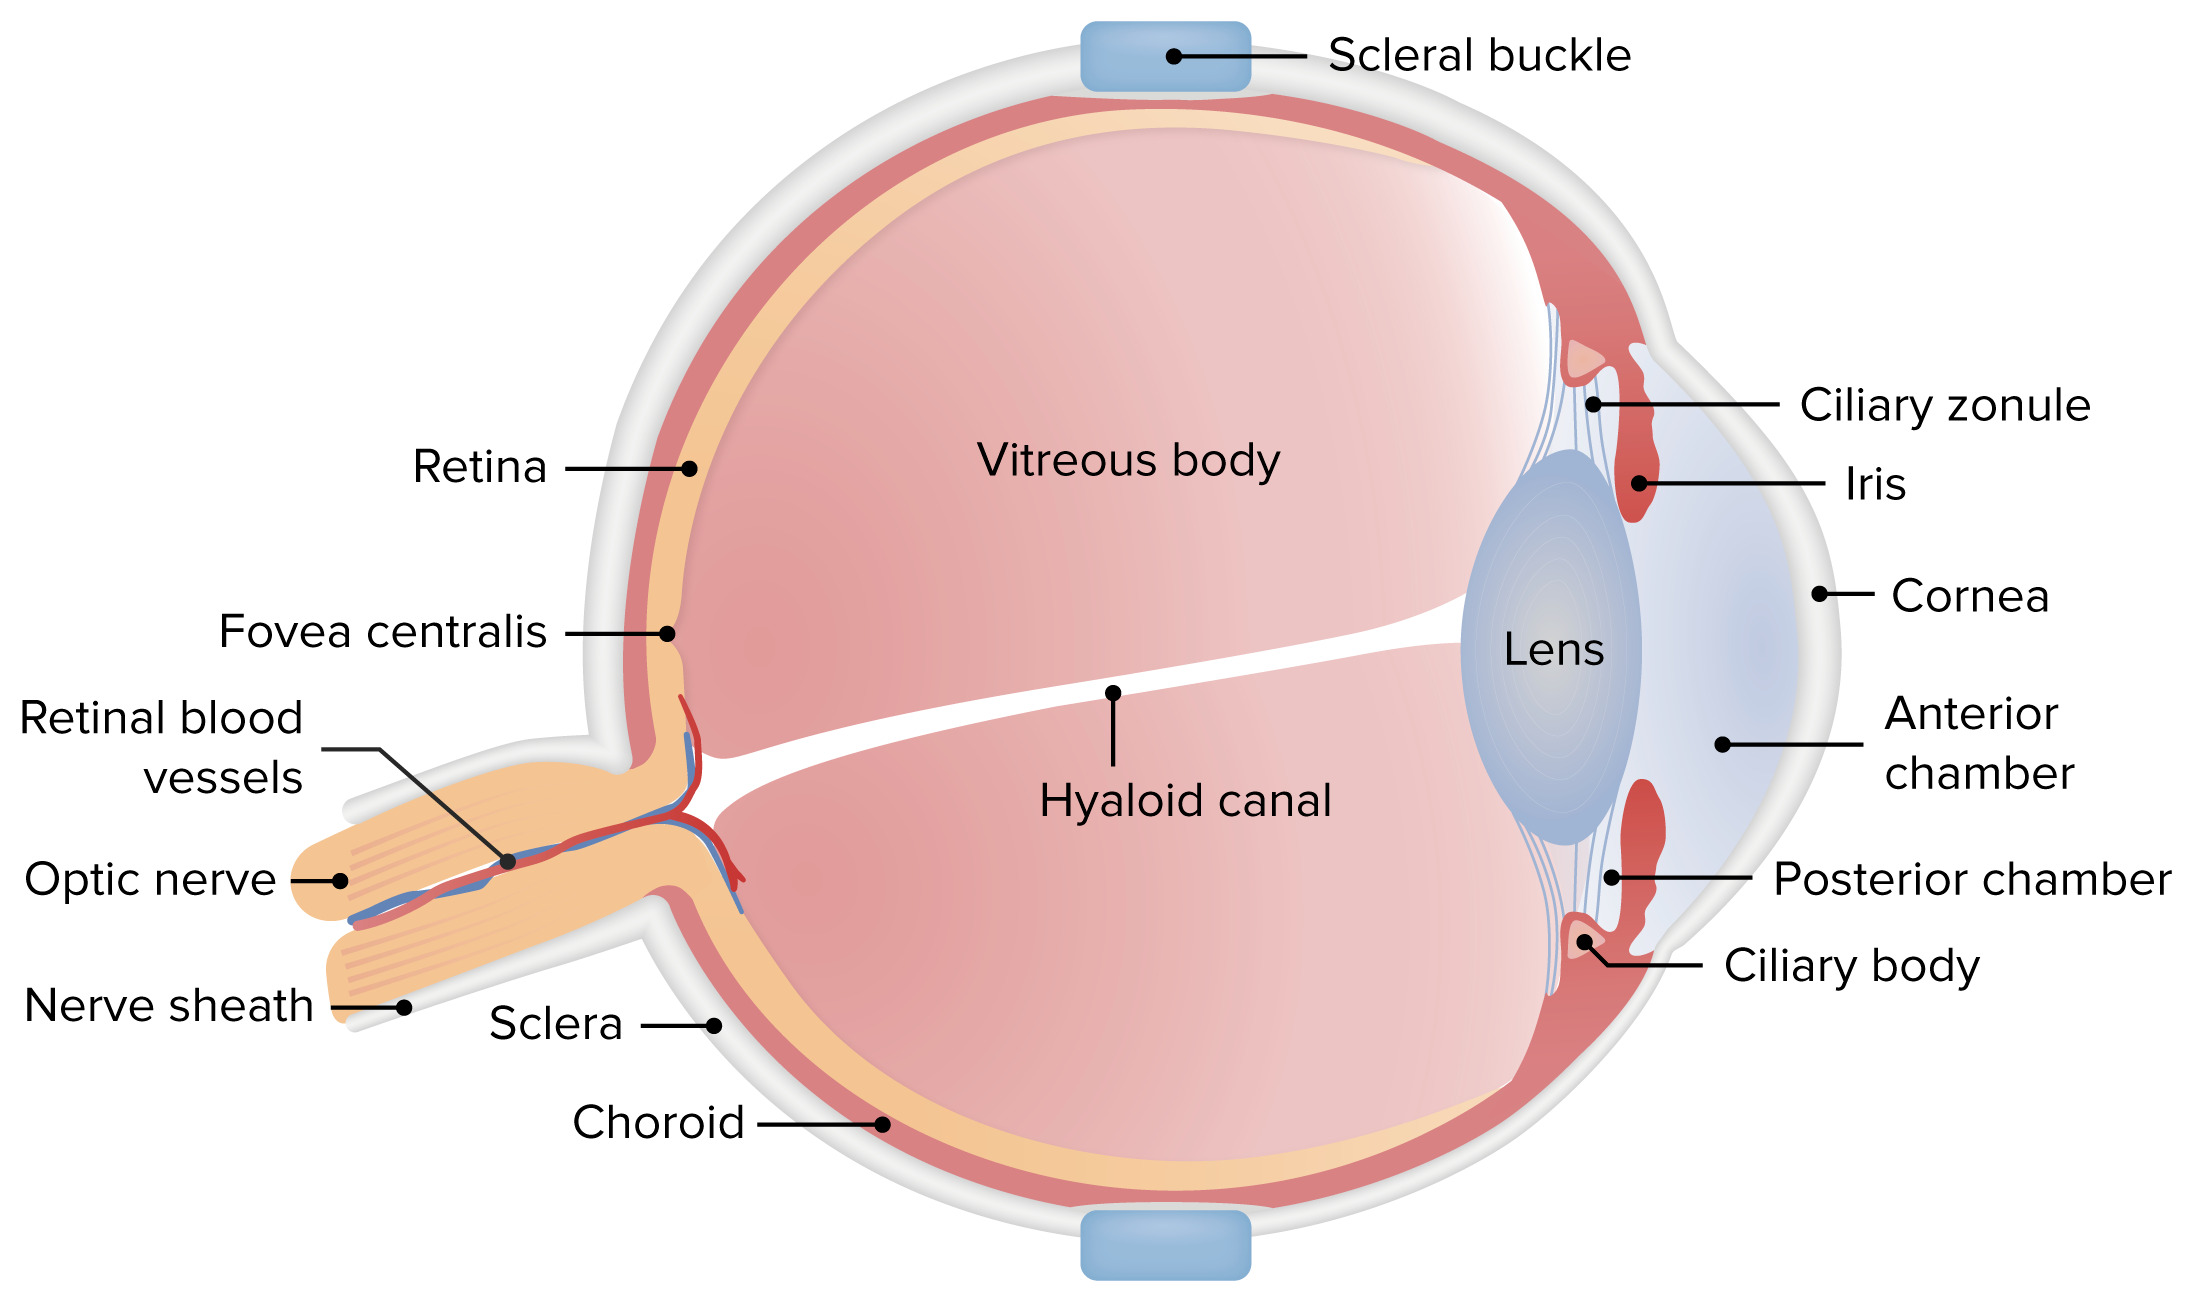 Descolamento de retina em cães e gatos possui reversão? - Iris